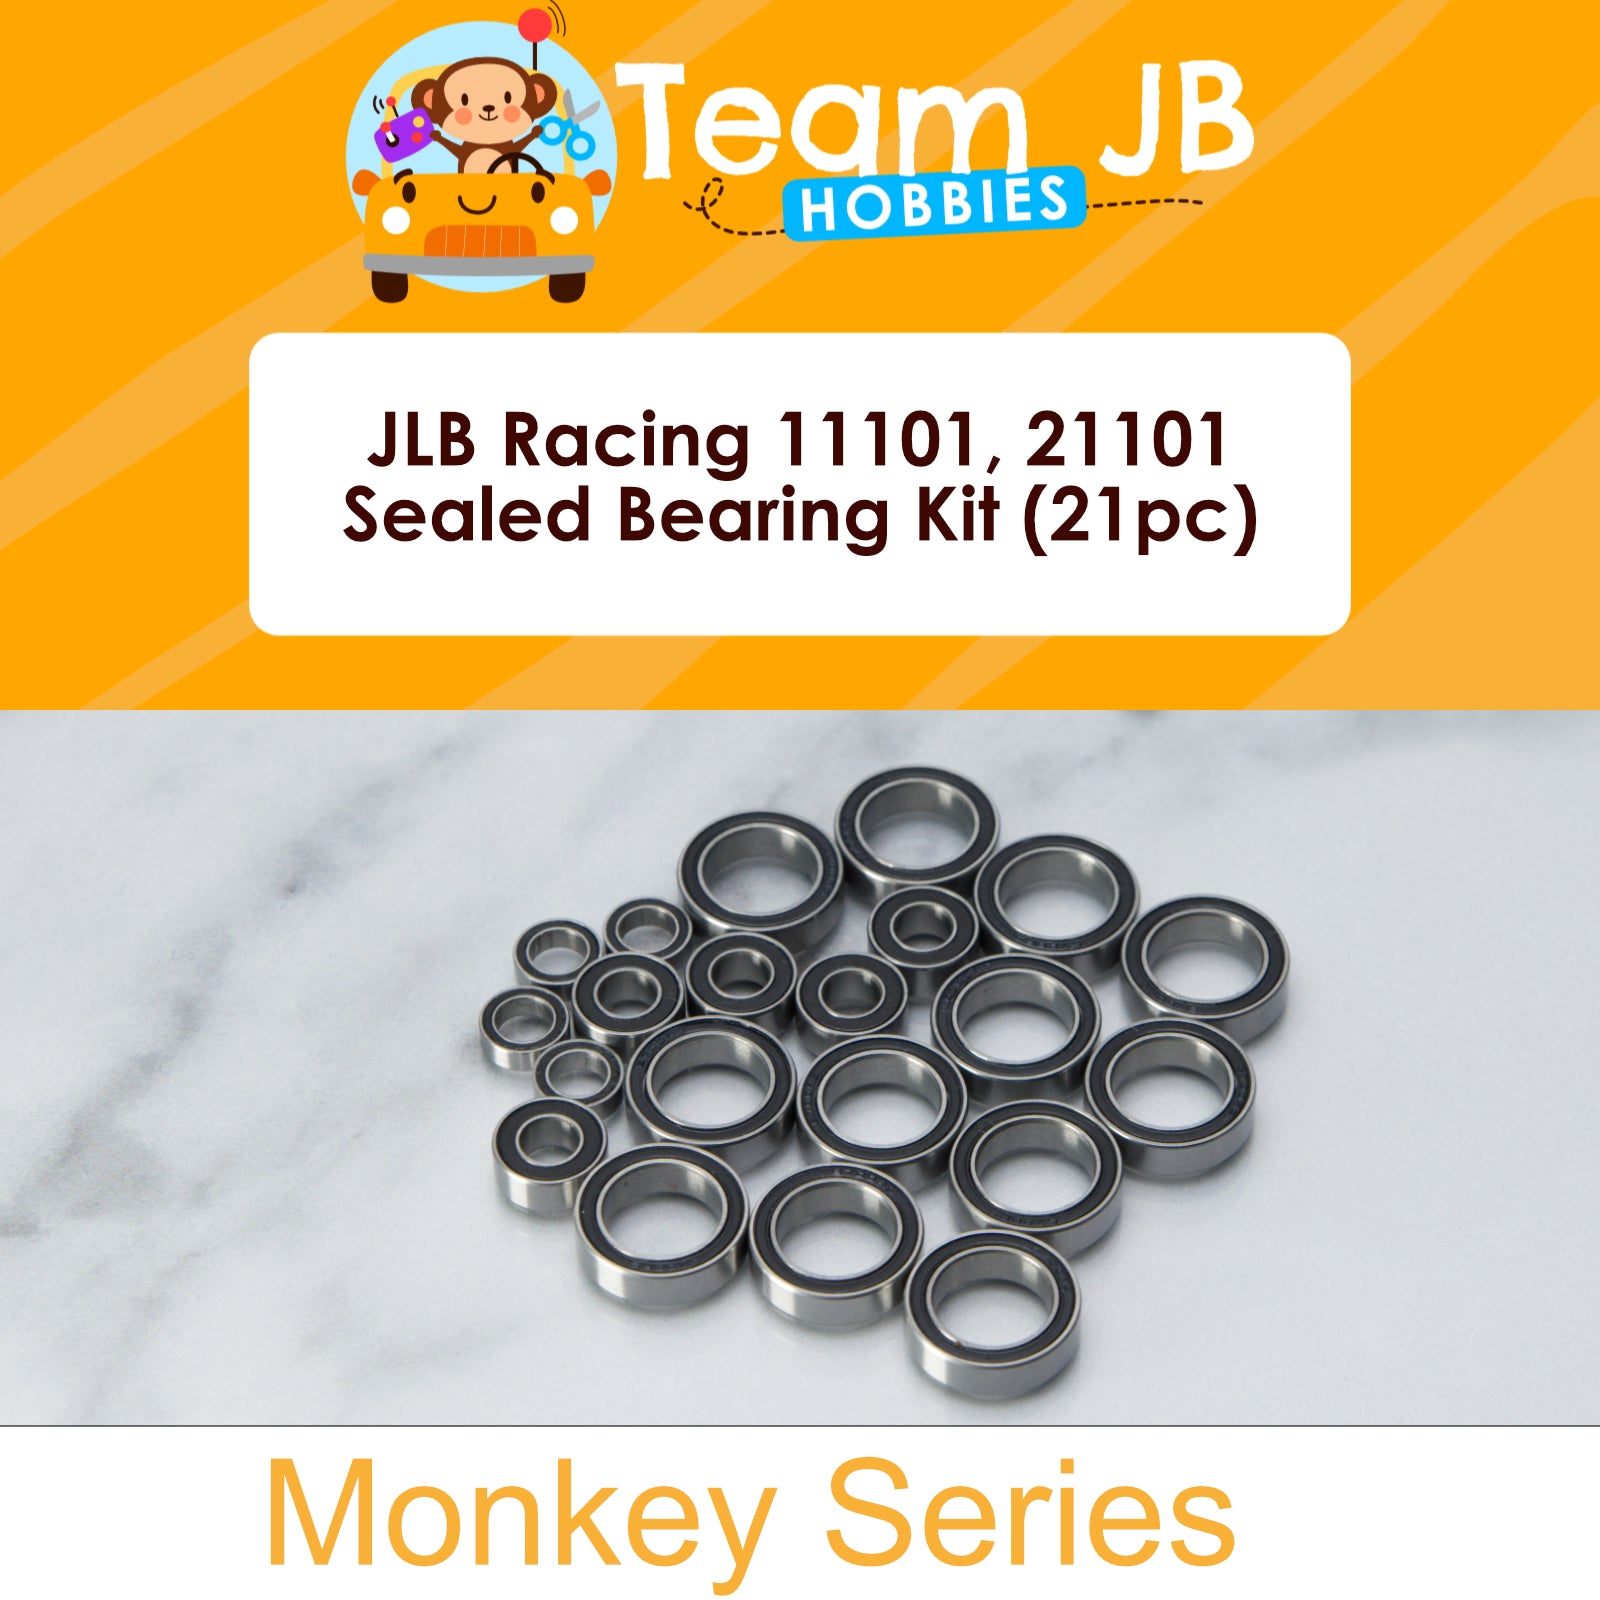 JLB Racing 11101, 21101 - Sealed Bearing Kit